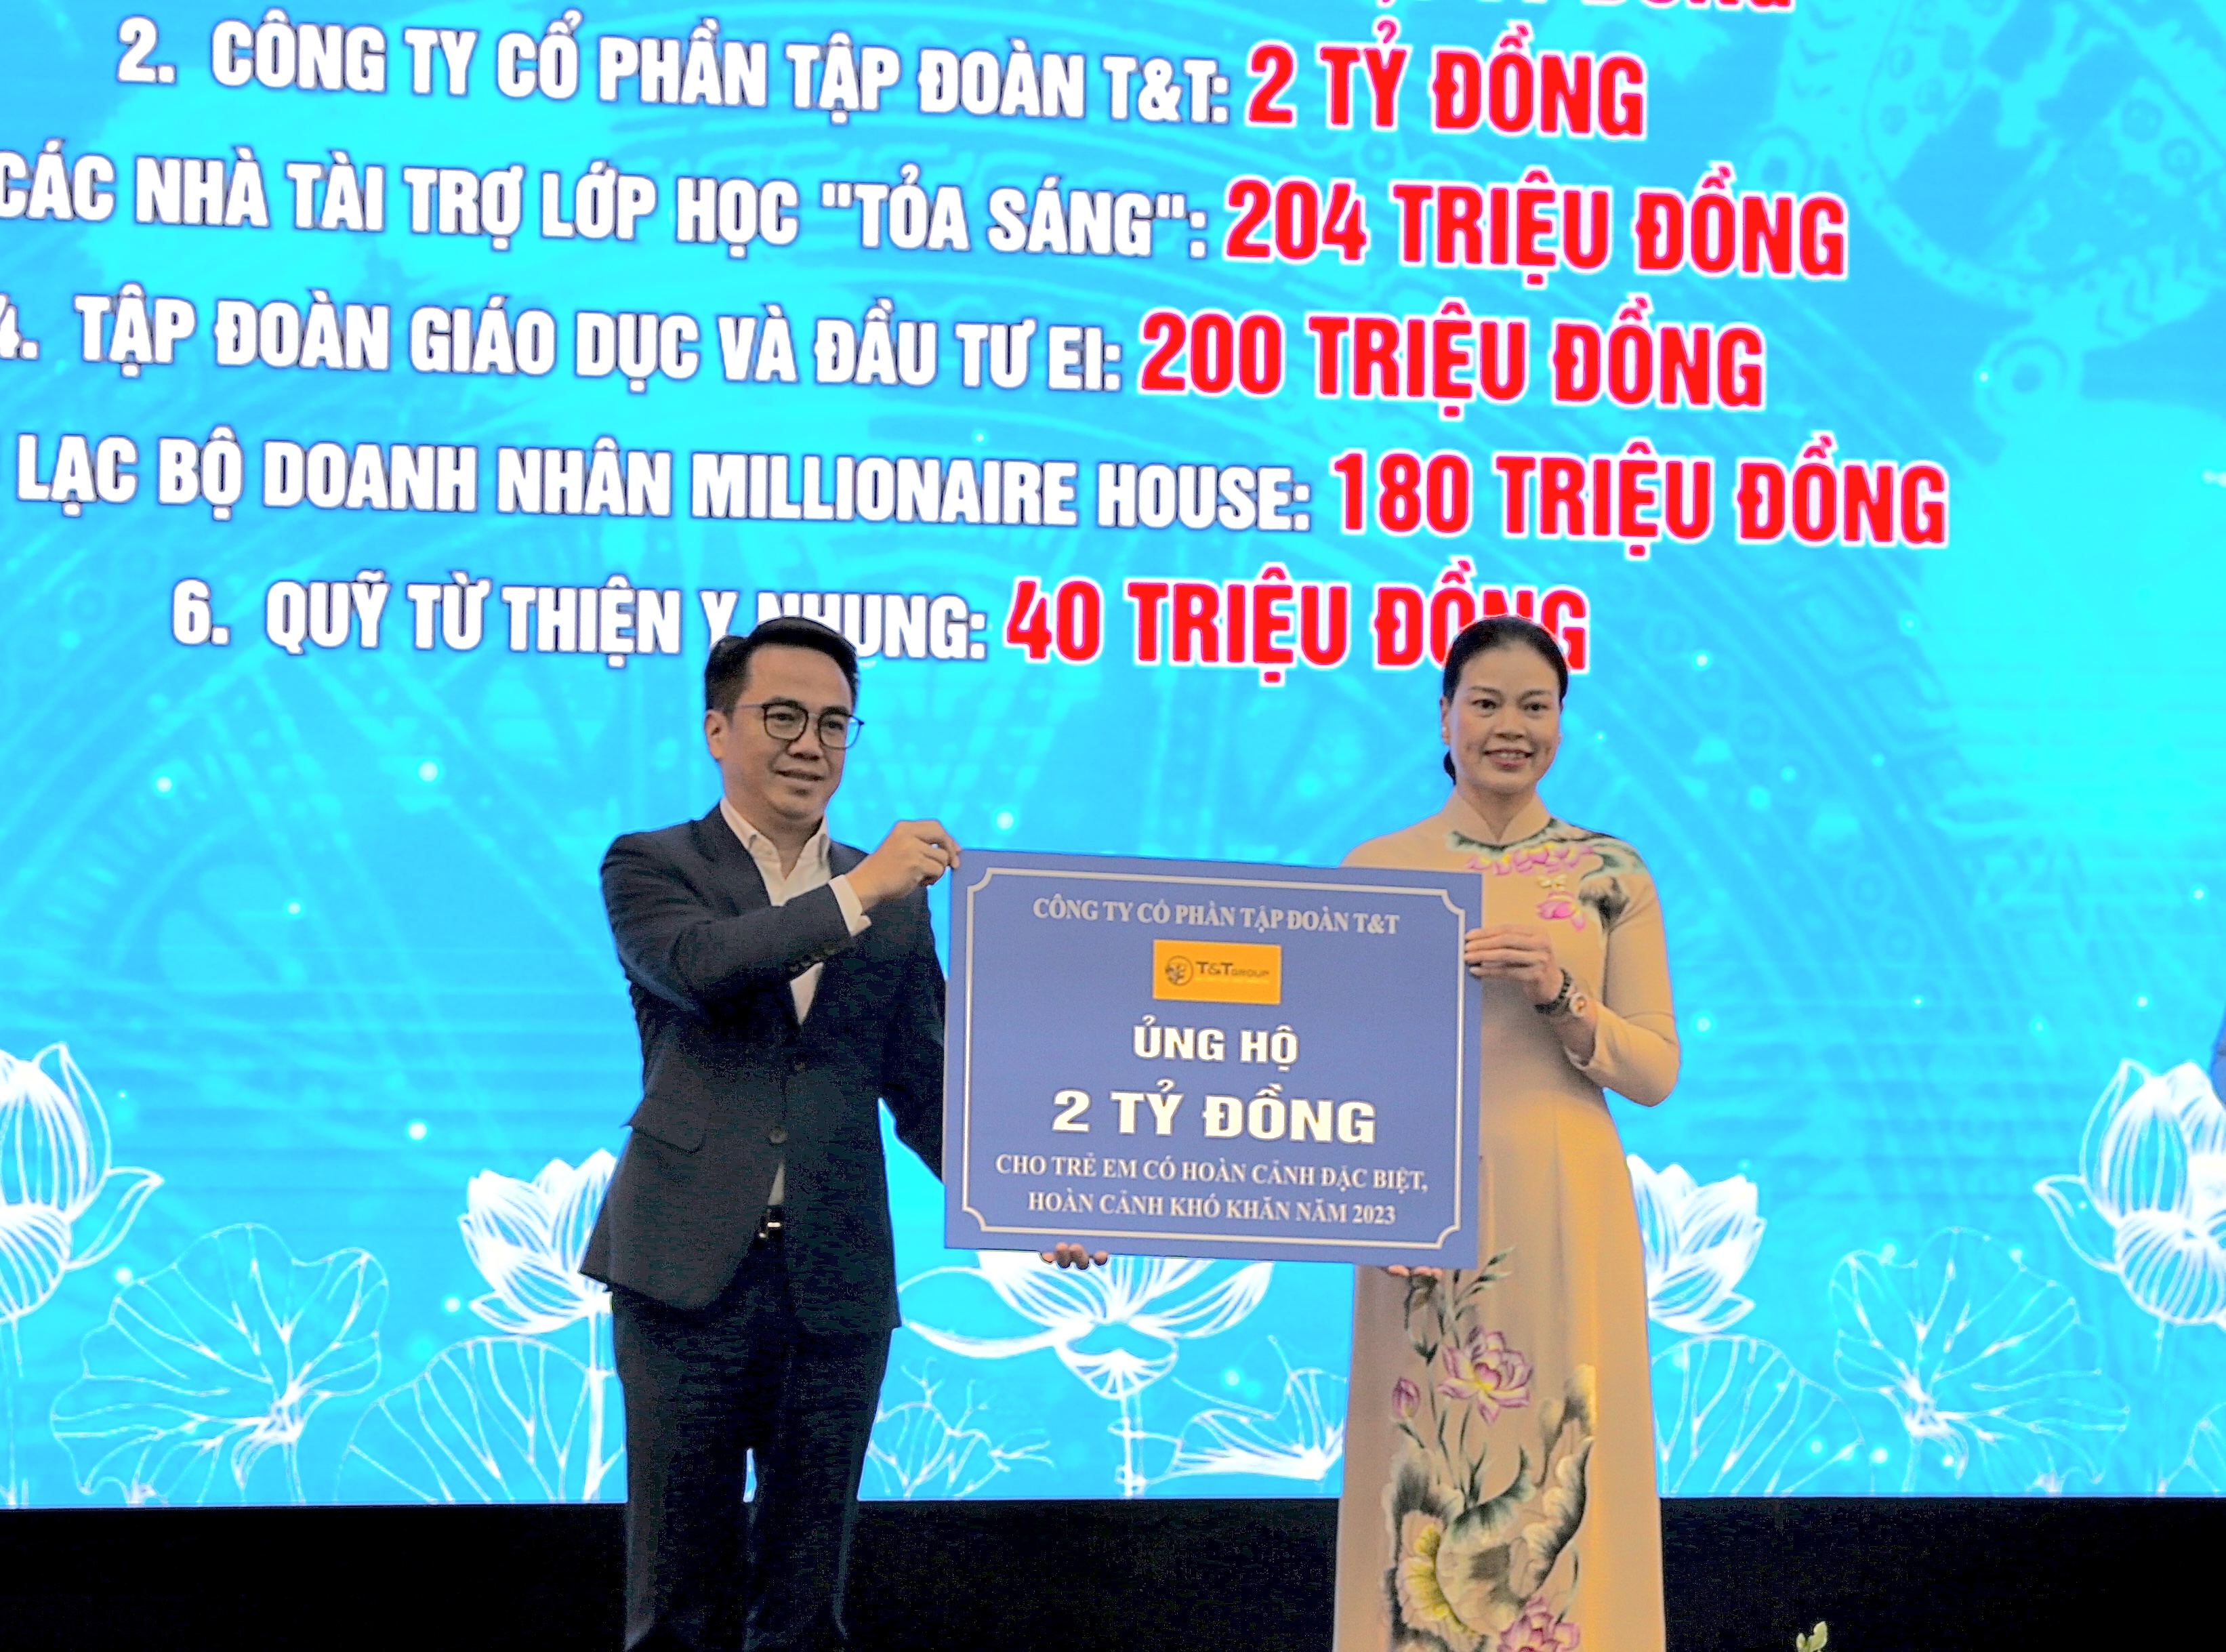 Đại diện lãnh đạo Tập đoàn T&T Group (trái) trao ủng hộ 2 tỷ đồng cho Trung tâm công tác xã hội và Quỹ bảo trợ trẻ em Hà Nội nhằm hỗ trợ trẻ em có hoàn cảnh đặc biệt, hoàn cảnh khó khăn.